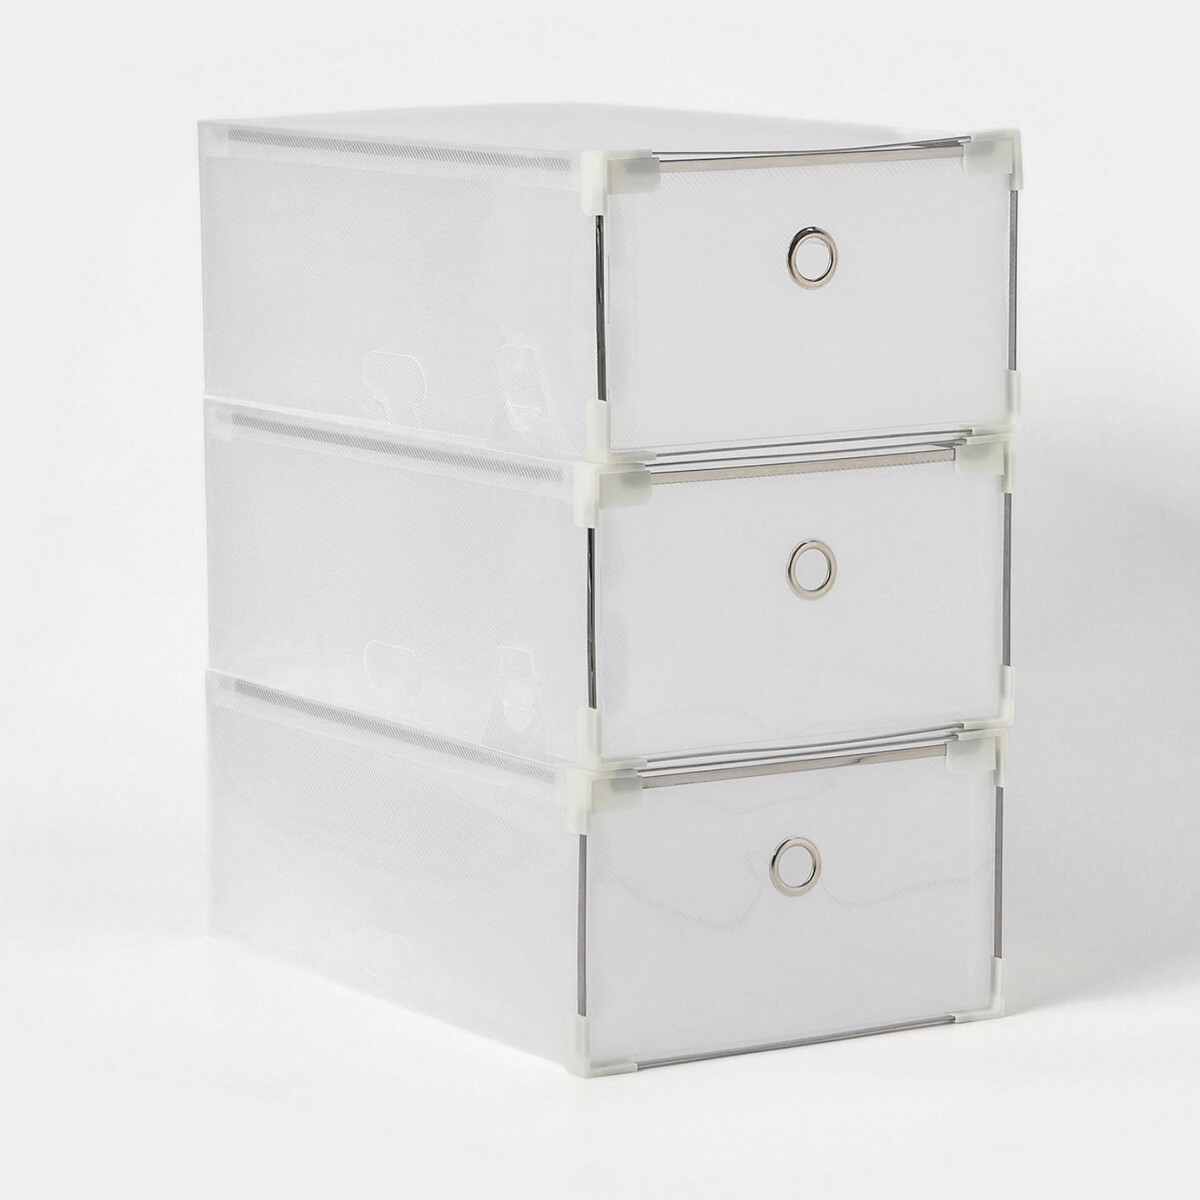 Коробка для хранения обуви выдвижная доляна large size, 21×33,5×12 см, 3 шт, цвет белый коробка универсальная makel 10010 оп mimoza белый